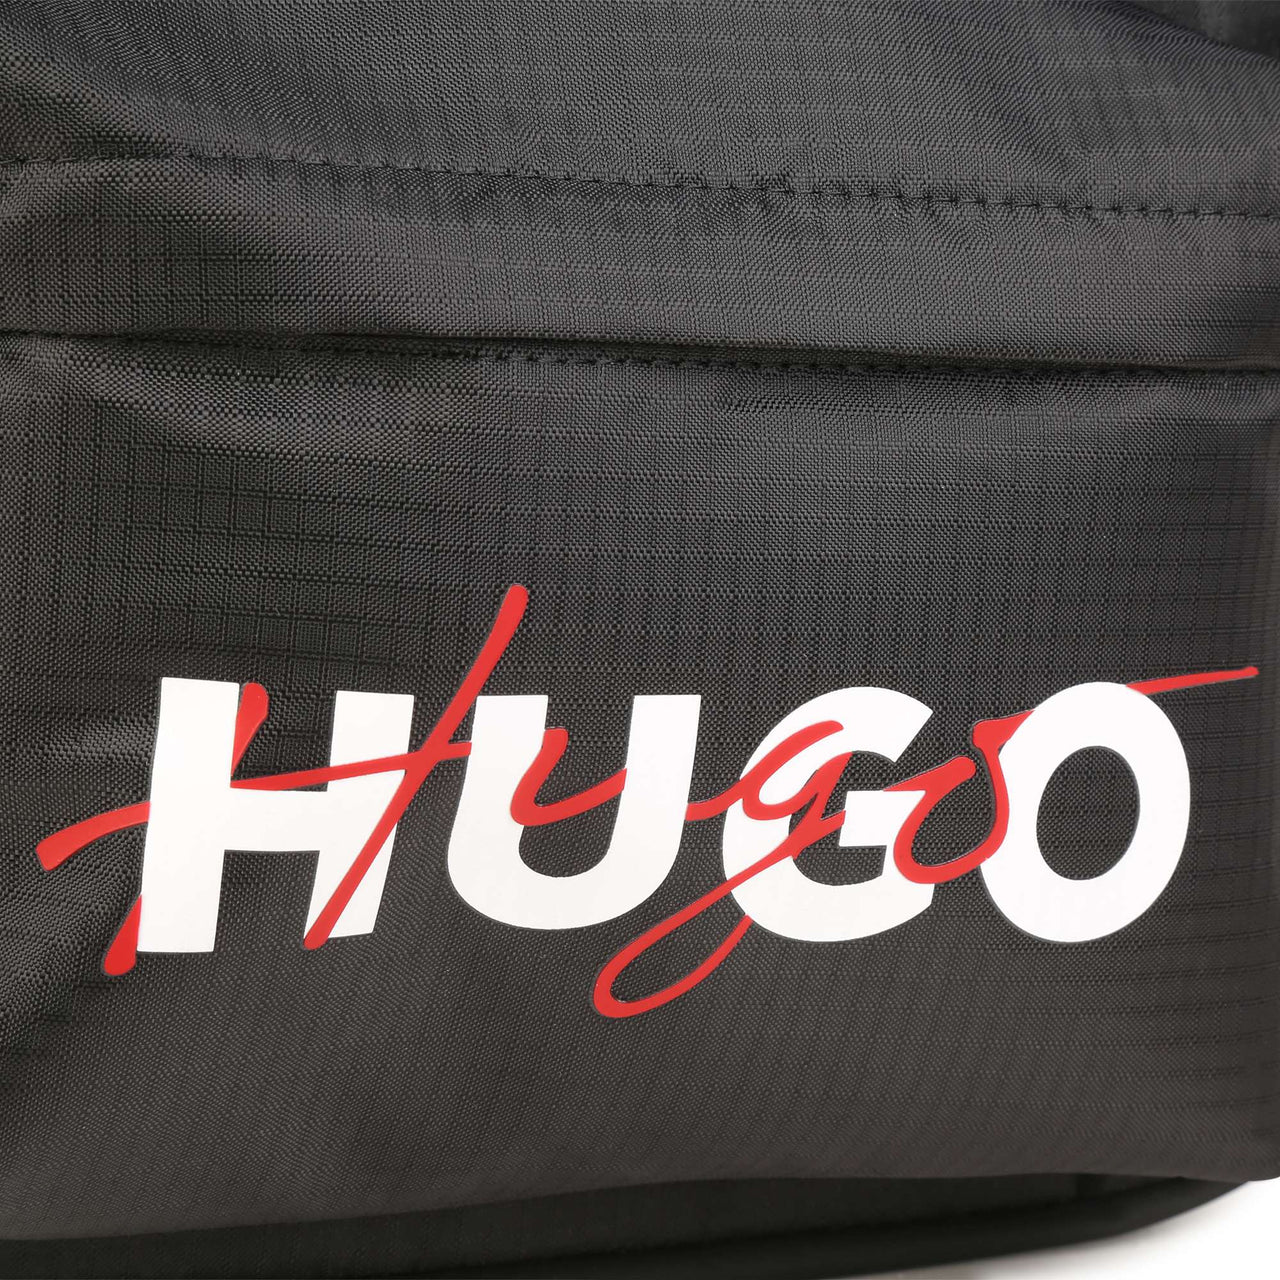 Backpack Hugo